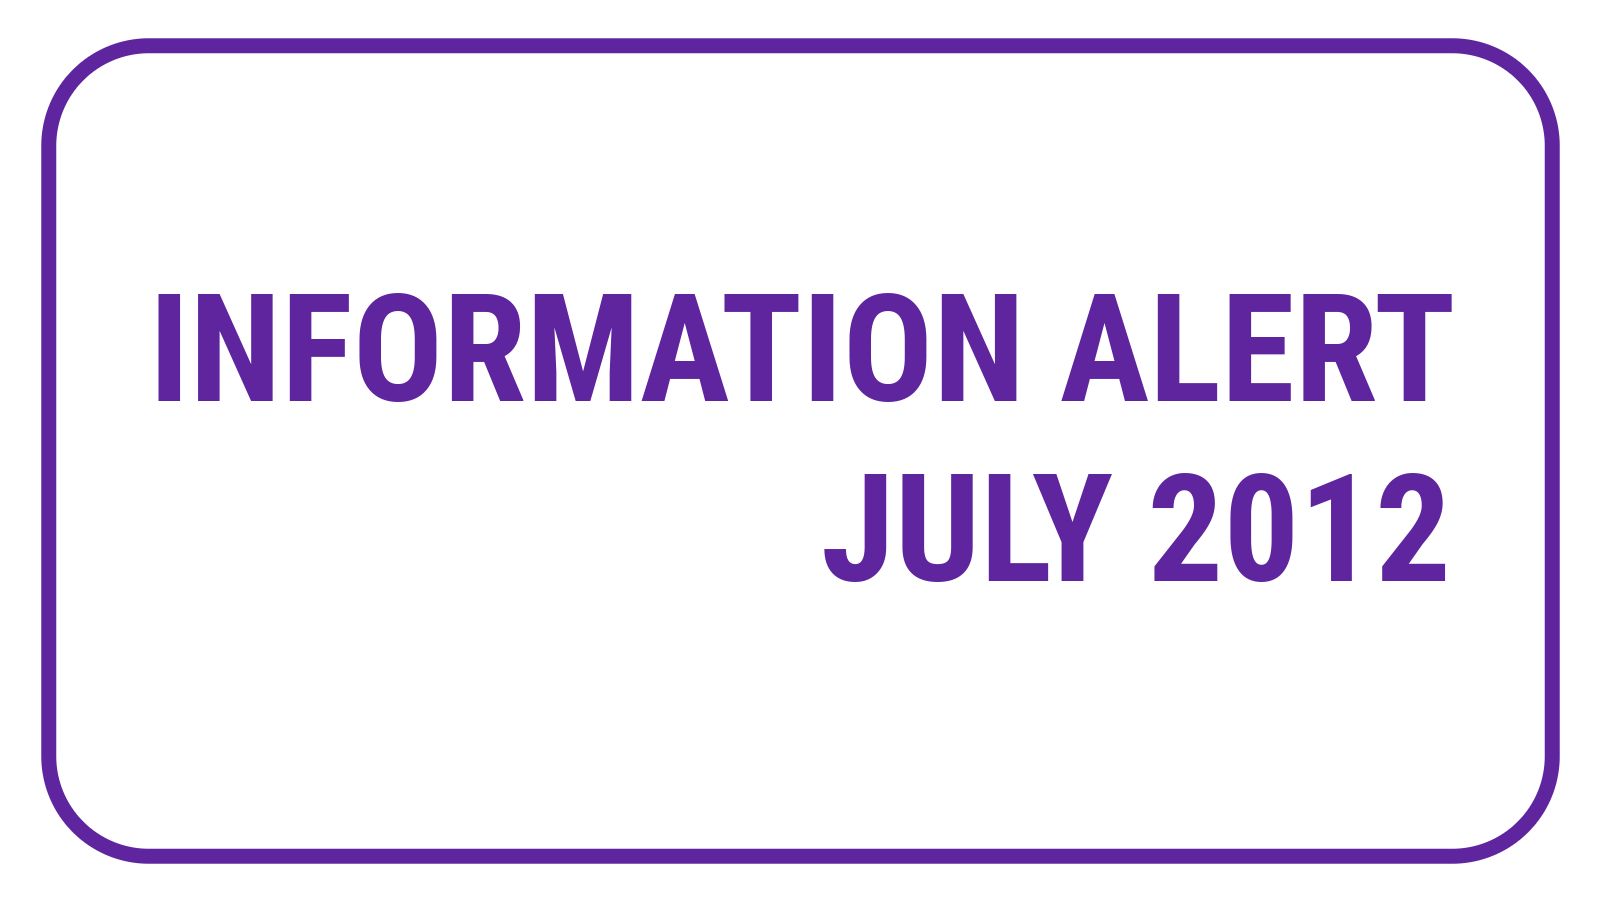 Information Alert July 2012